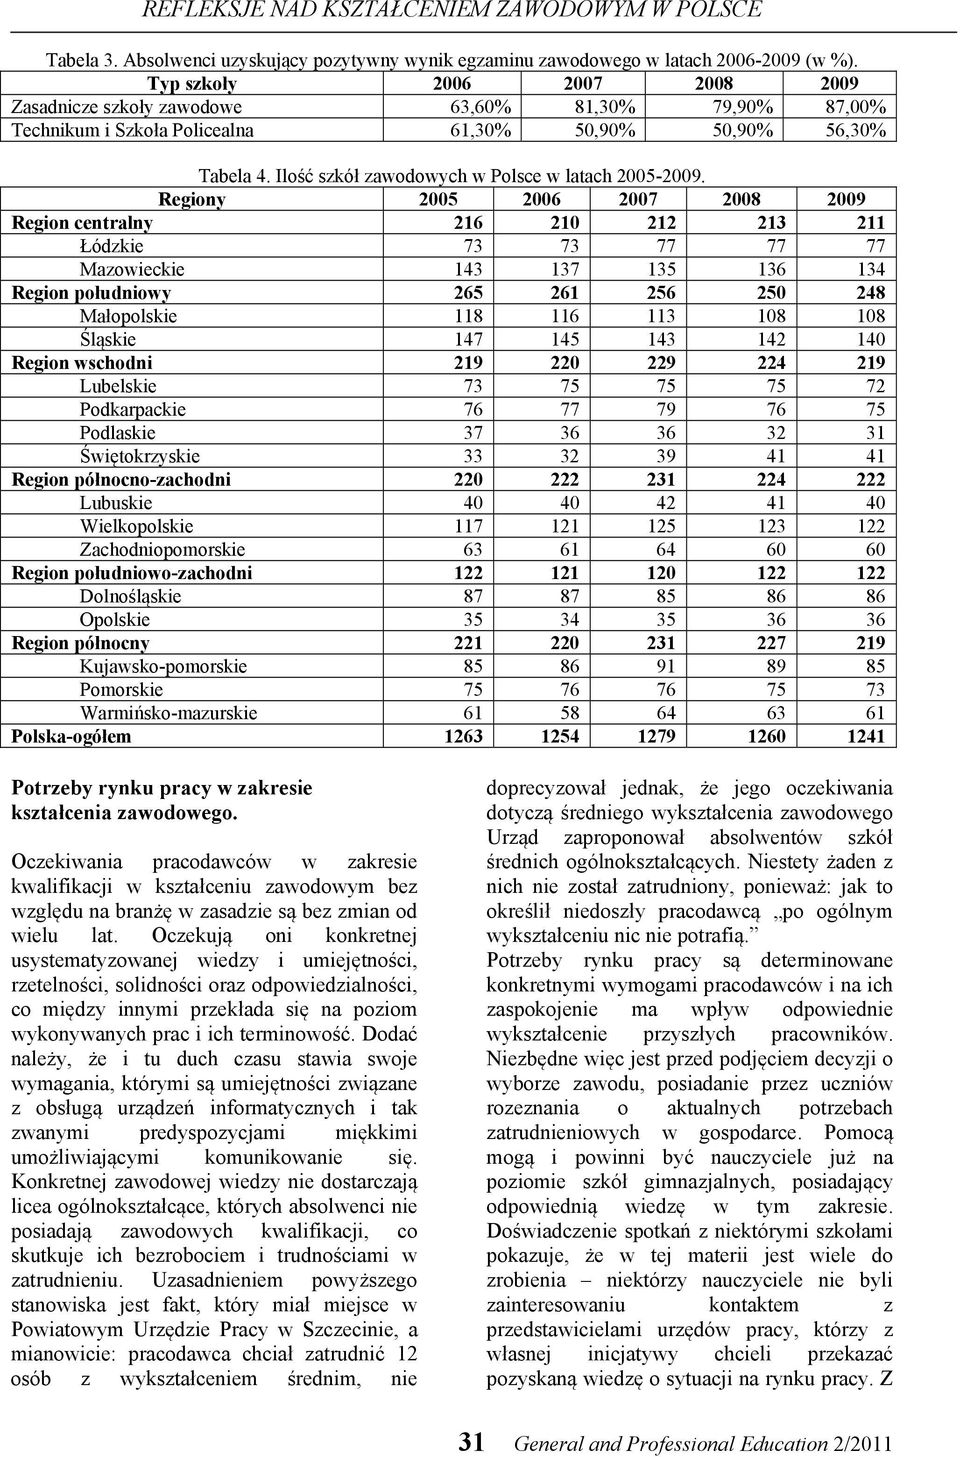 Ilość szkół zawodowych w Polsce w latach 2005-2009.